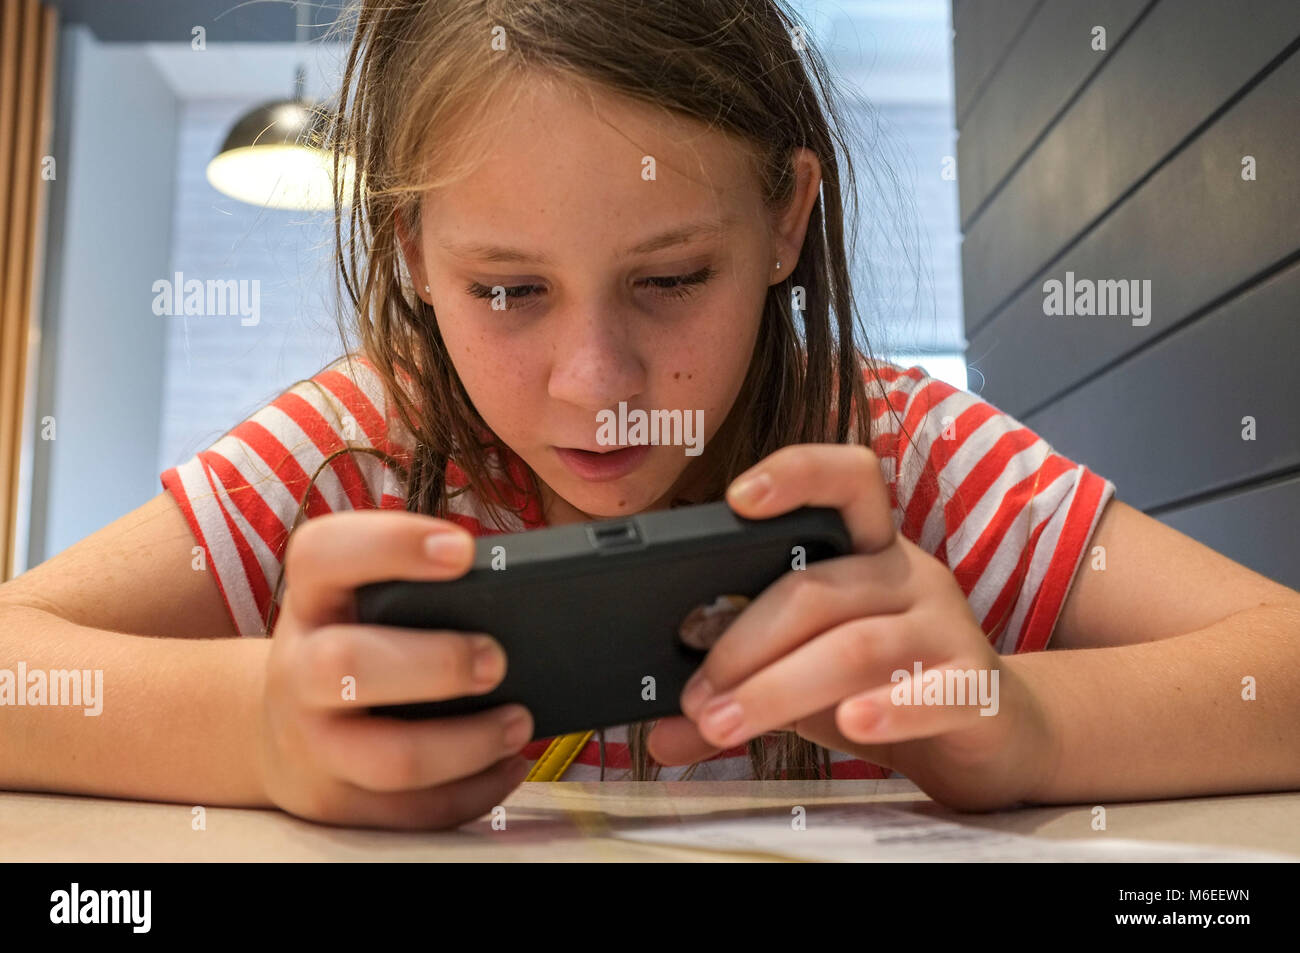 Giovane ragazza che gioca con un telefono cellulare, indoor. Foto Stock